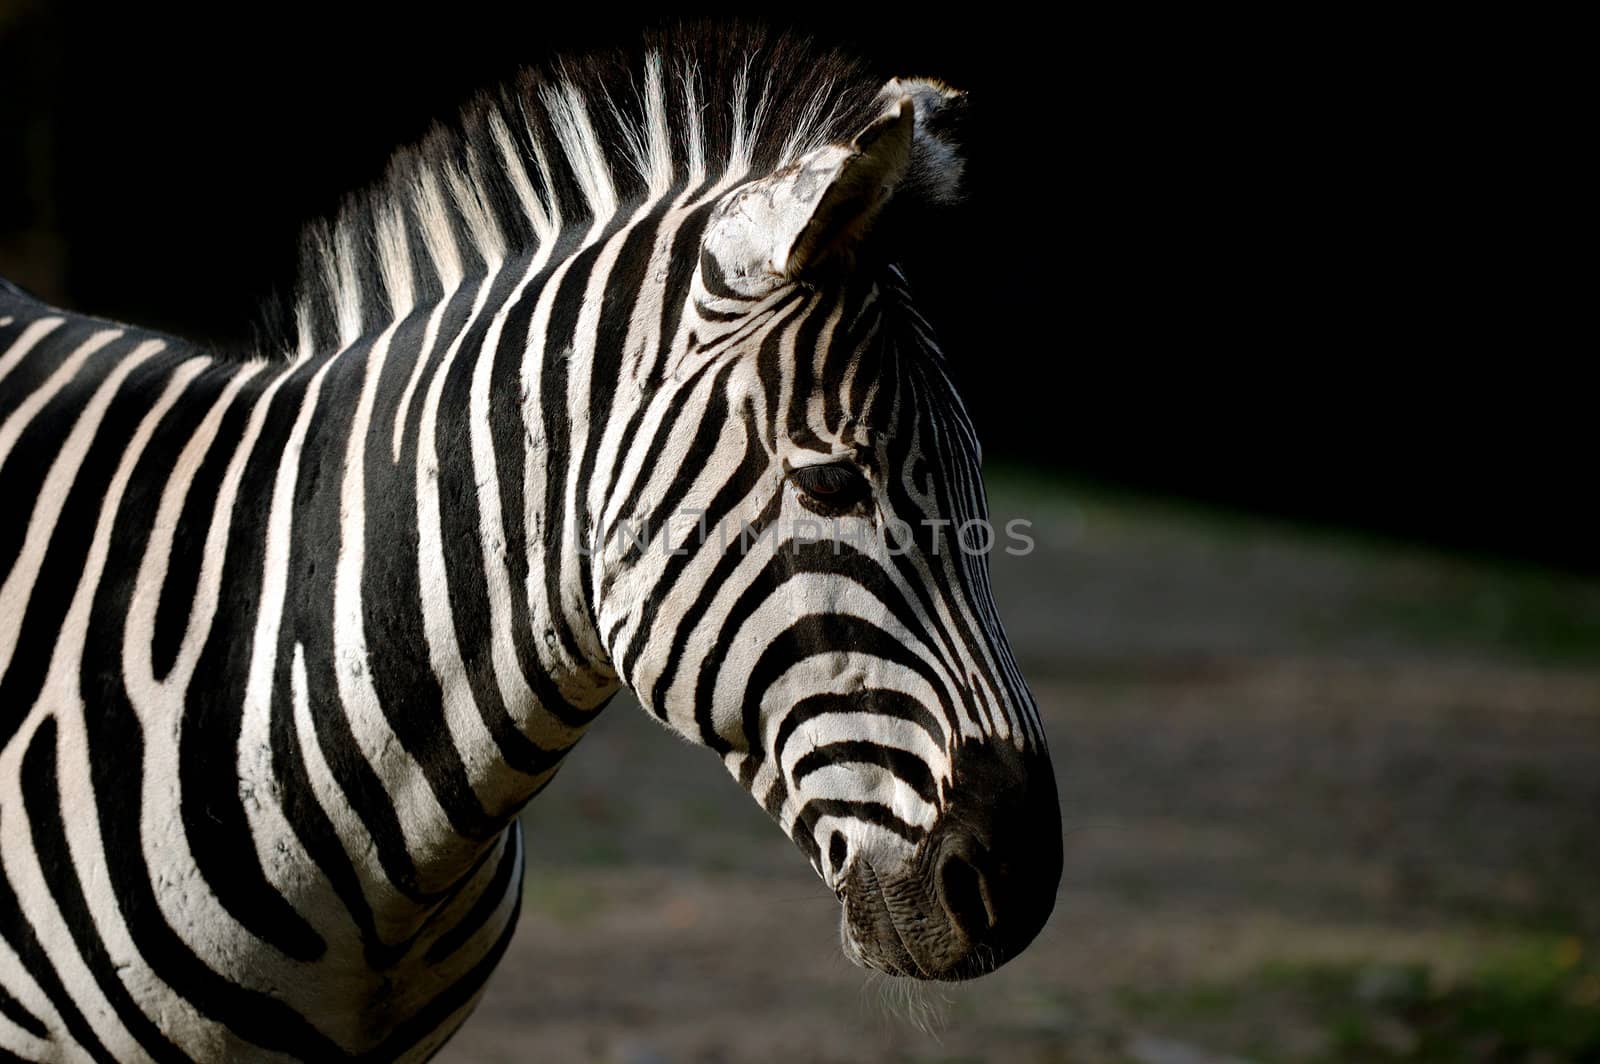 Zebra is standing in the sun.